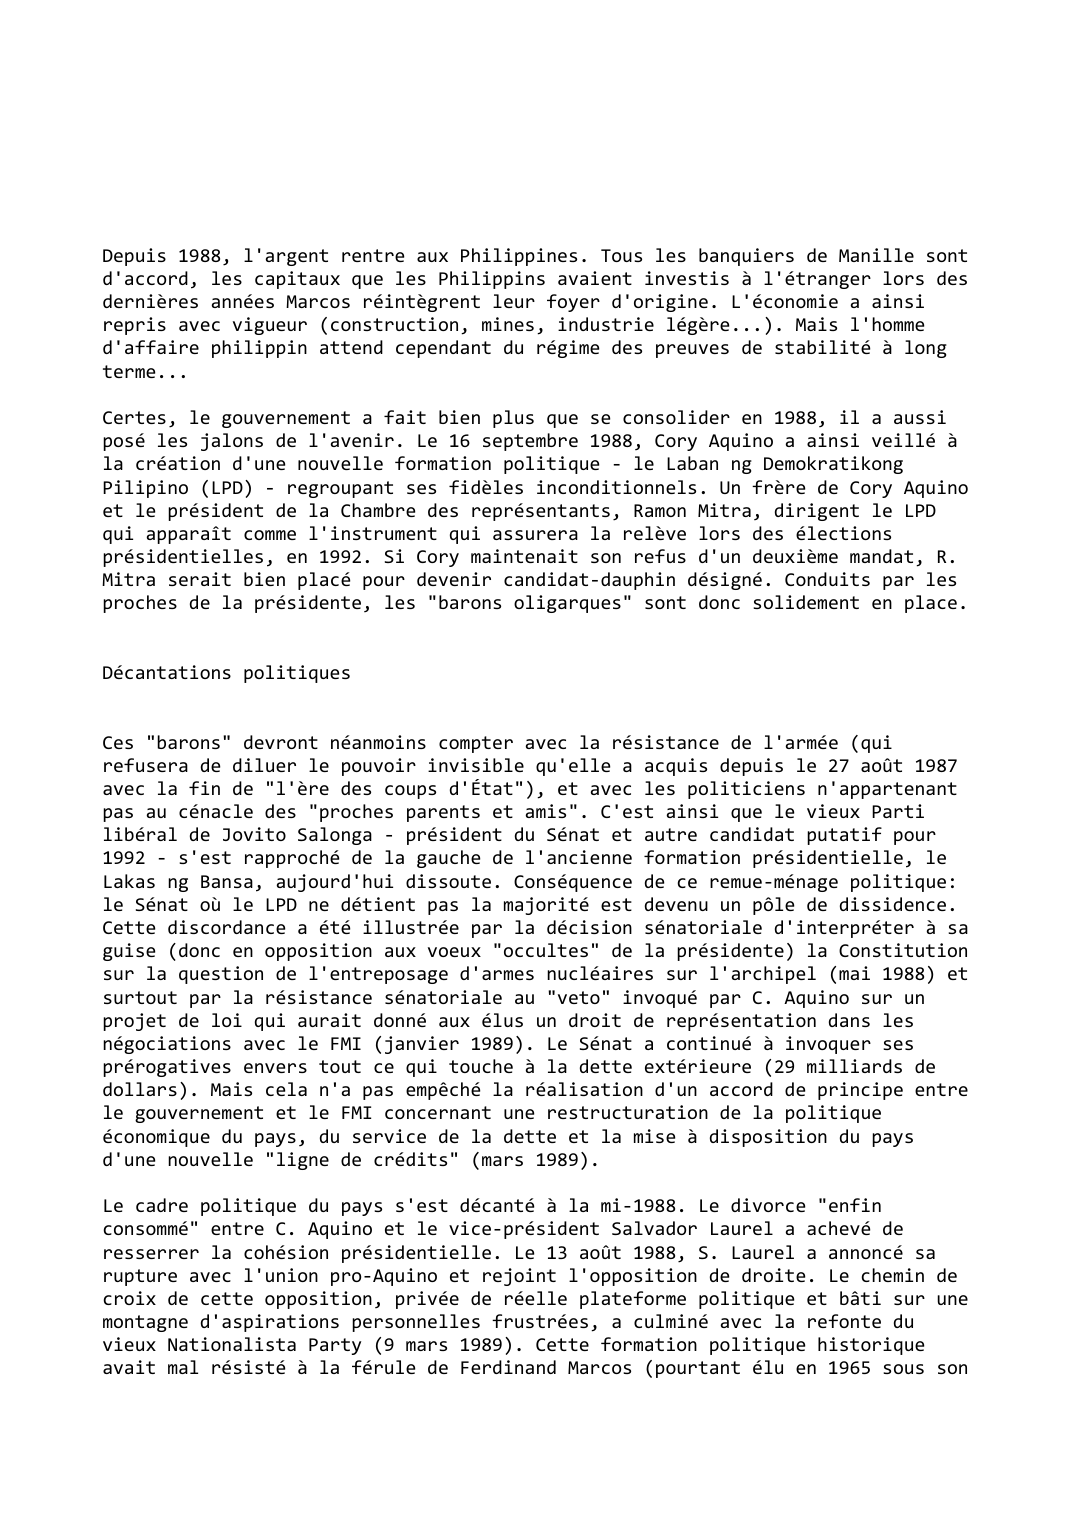 Prévisualisation du document Philippines (1988-1989): Resserrement de la cohésion présidentielle